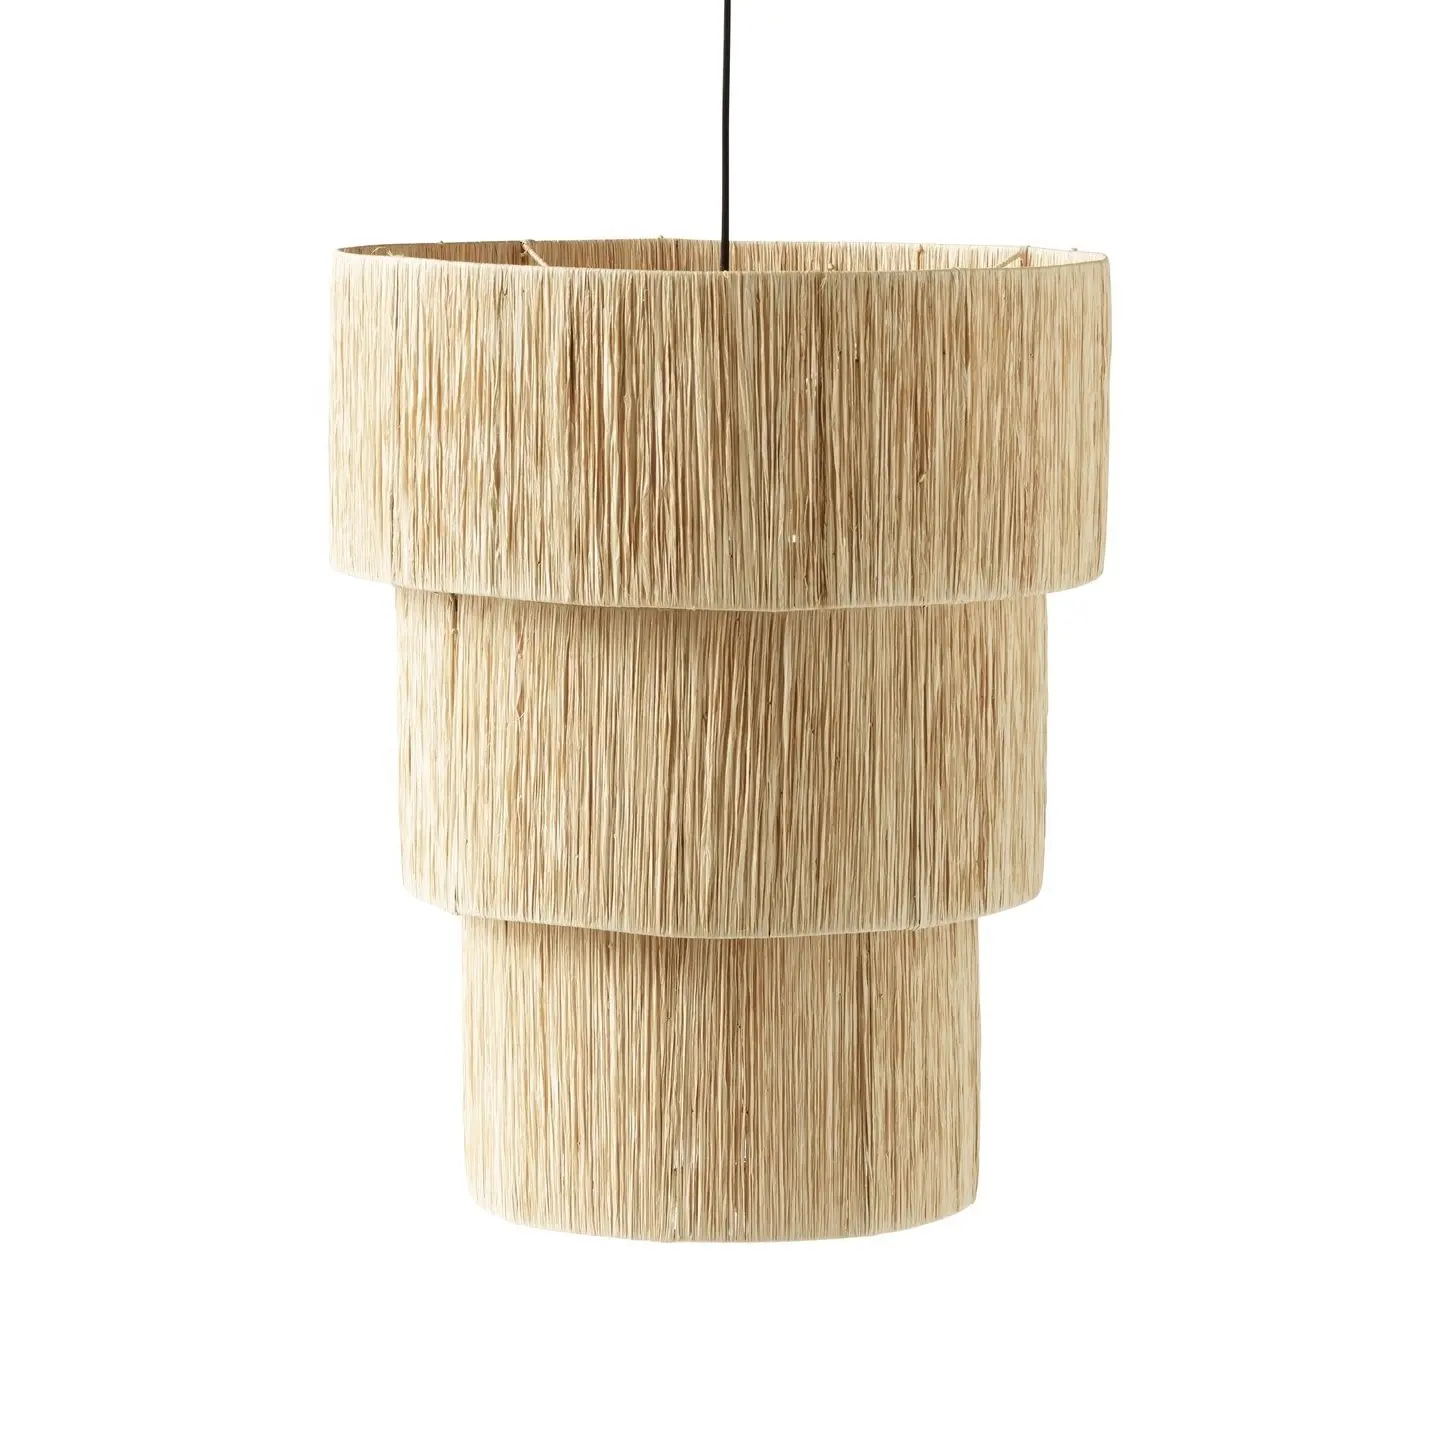 Glovimex-lámpara colgante de bambú, accesorio de iluminación de 3 niveles para decoración Interior, de yute